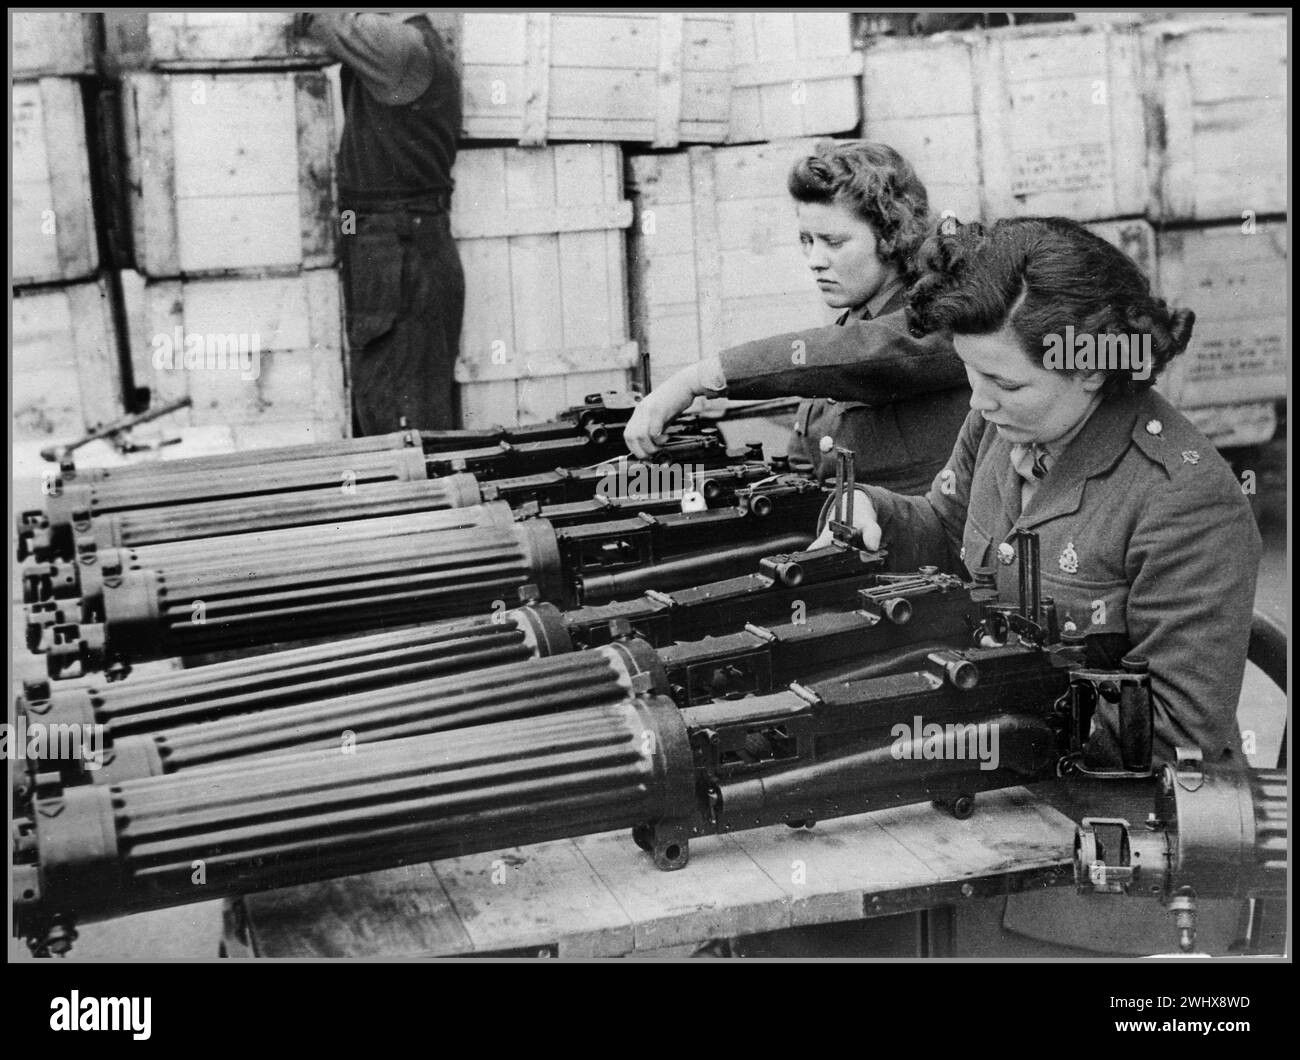 WW2 UK War Work refroidi à l'eau .303 mitrailleuses Vickers juste arrivées de Vickers Ltd sont vérifiées dans un dépôt de munitions en Angleterre par des femmes de l'ATS seconde Guerre mondiale date circa 1941 Banque D'Images